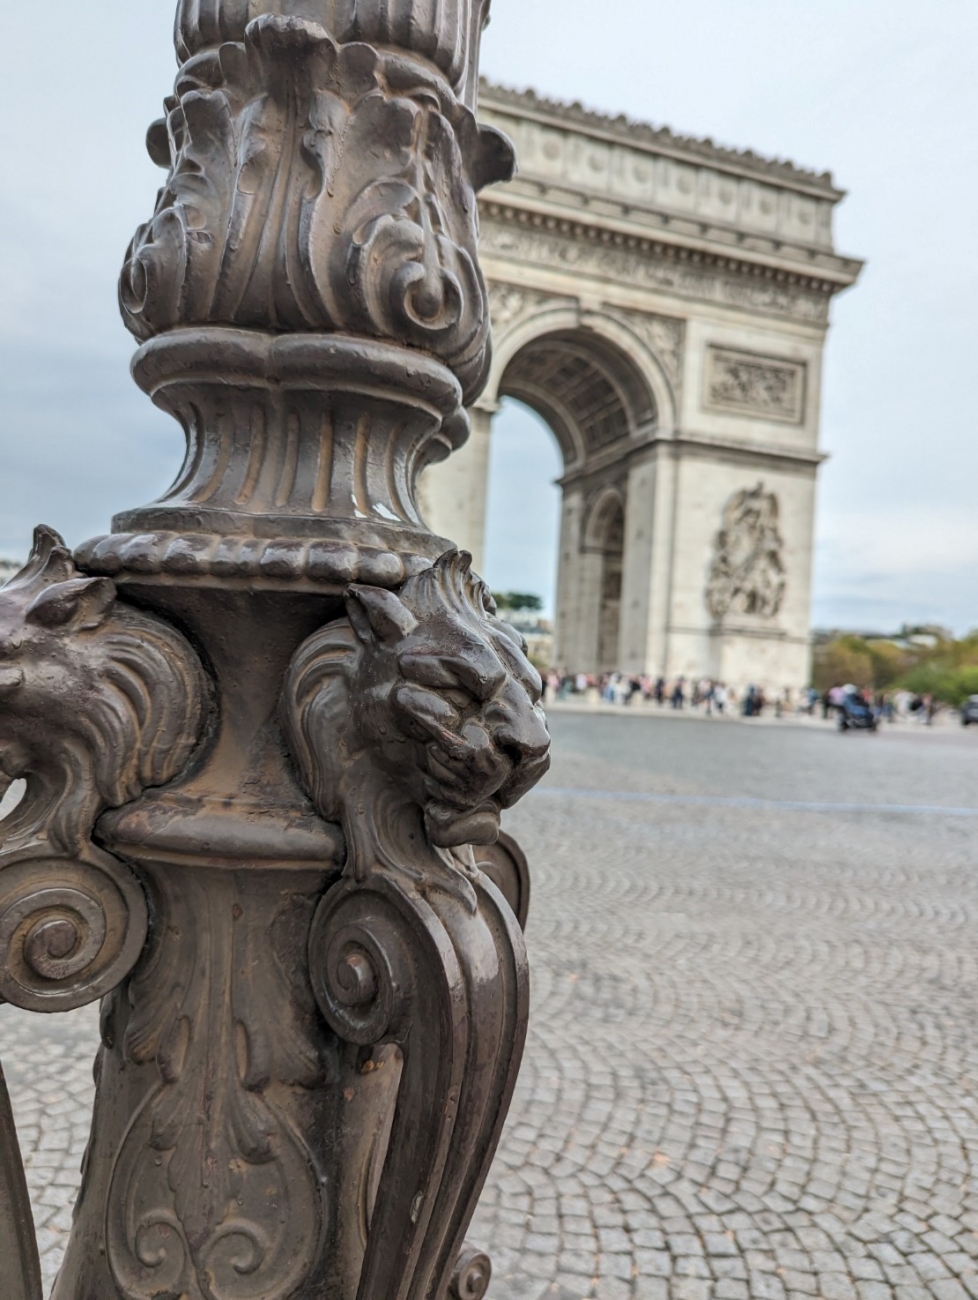 パリに行った際に見かけた街灯と凱旋門です。良くも悪くも、こうした細かい部分に目を奪われてしまいます。勿論、リヨンにもこういったものはありました。歩いていても楽しい町です。